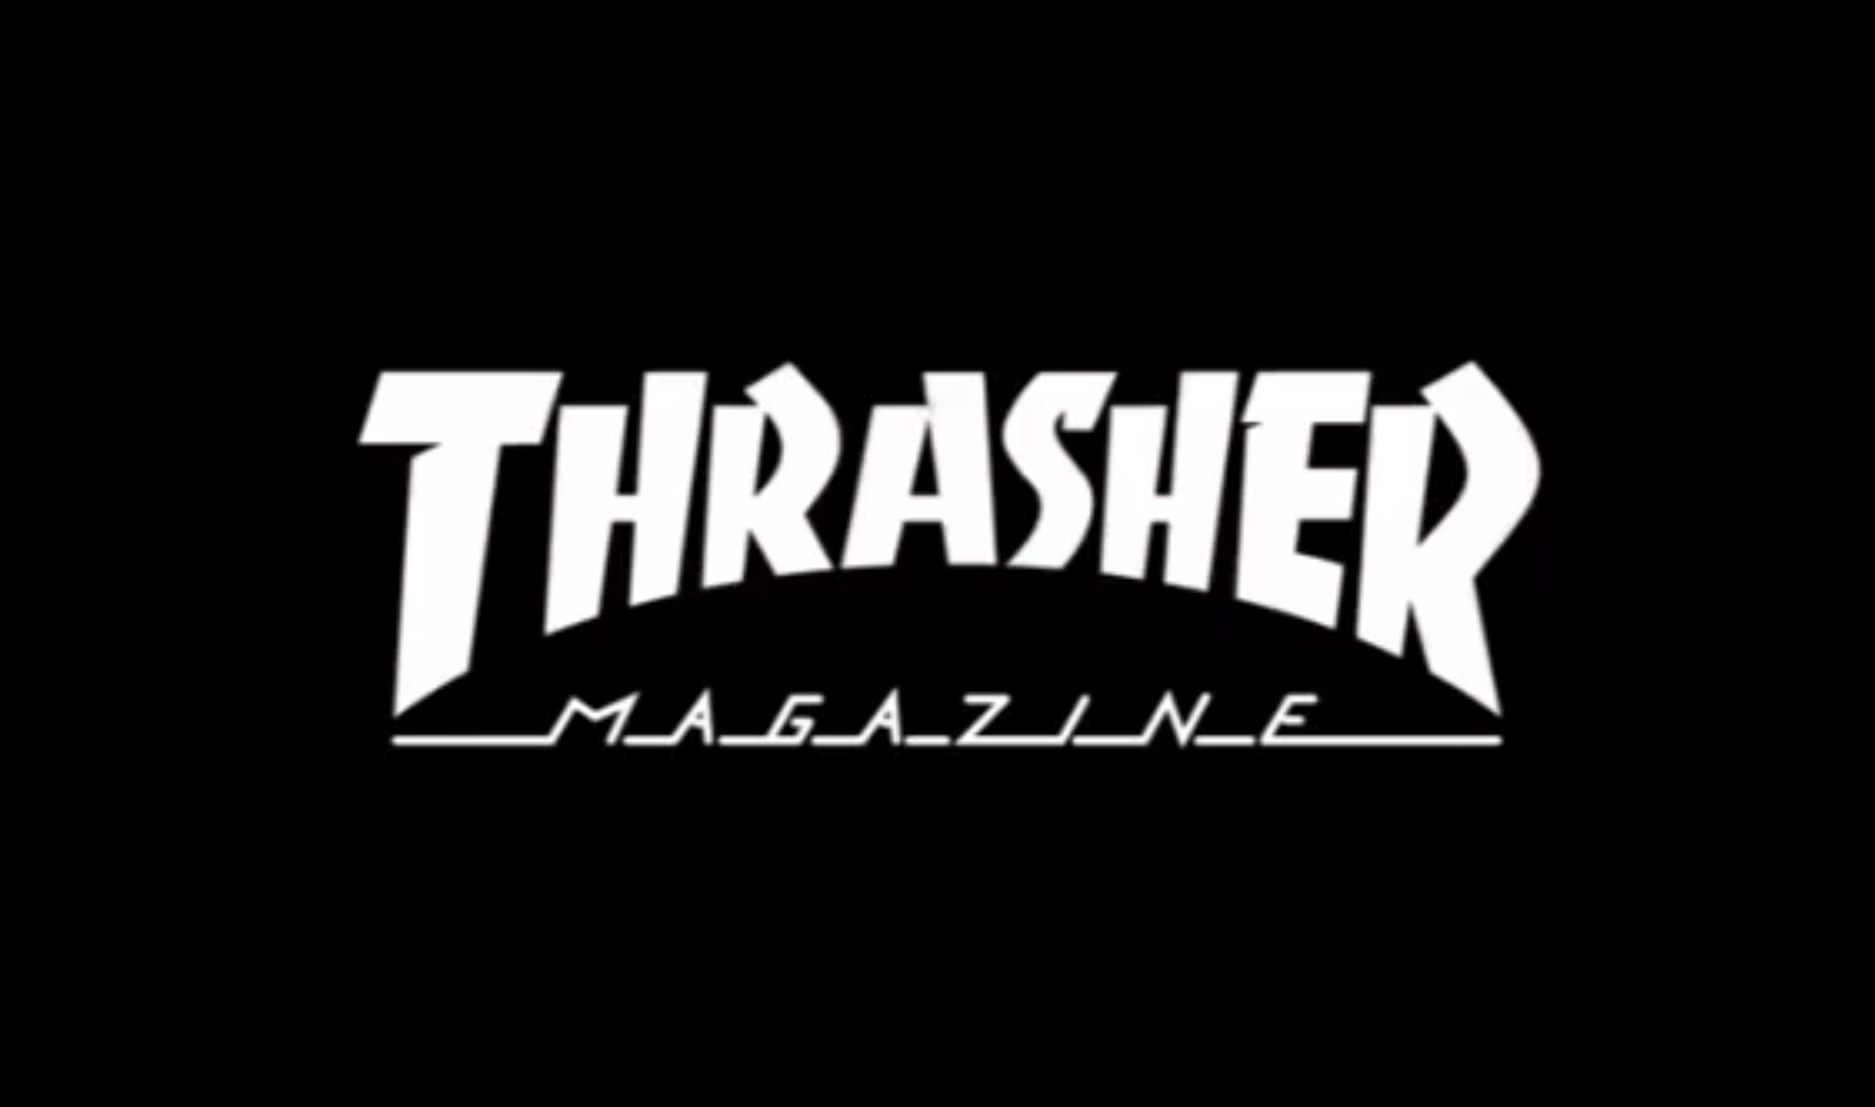 Thrasher Skate Goat Wallpaper. El magazine de skate Thrasher acaba